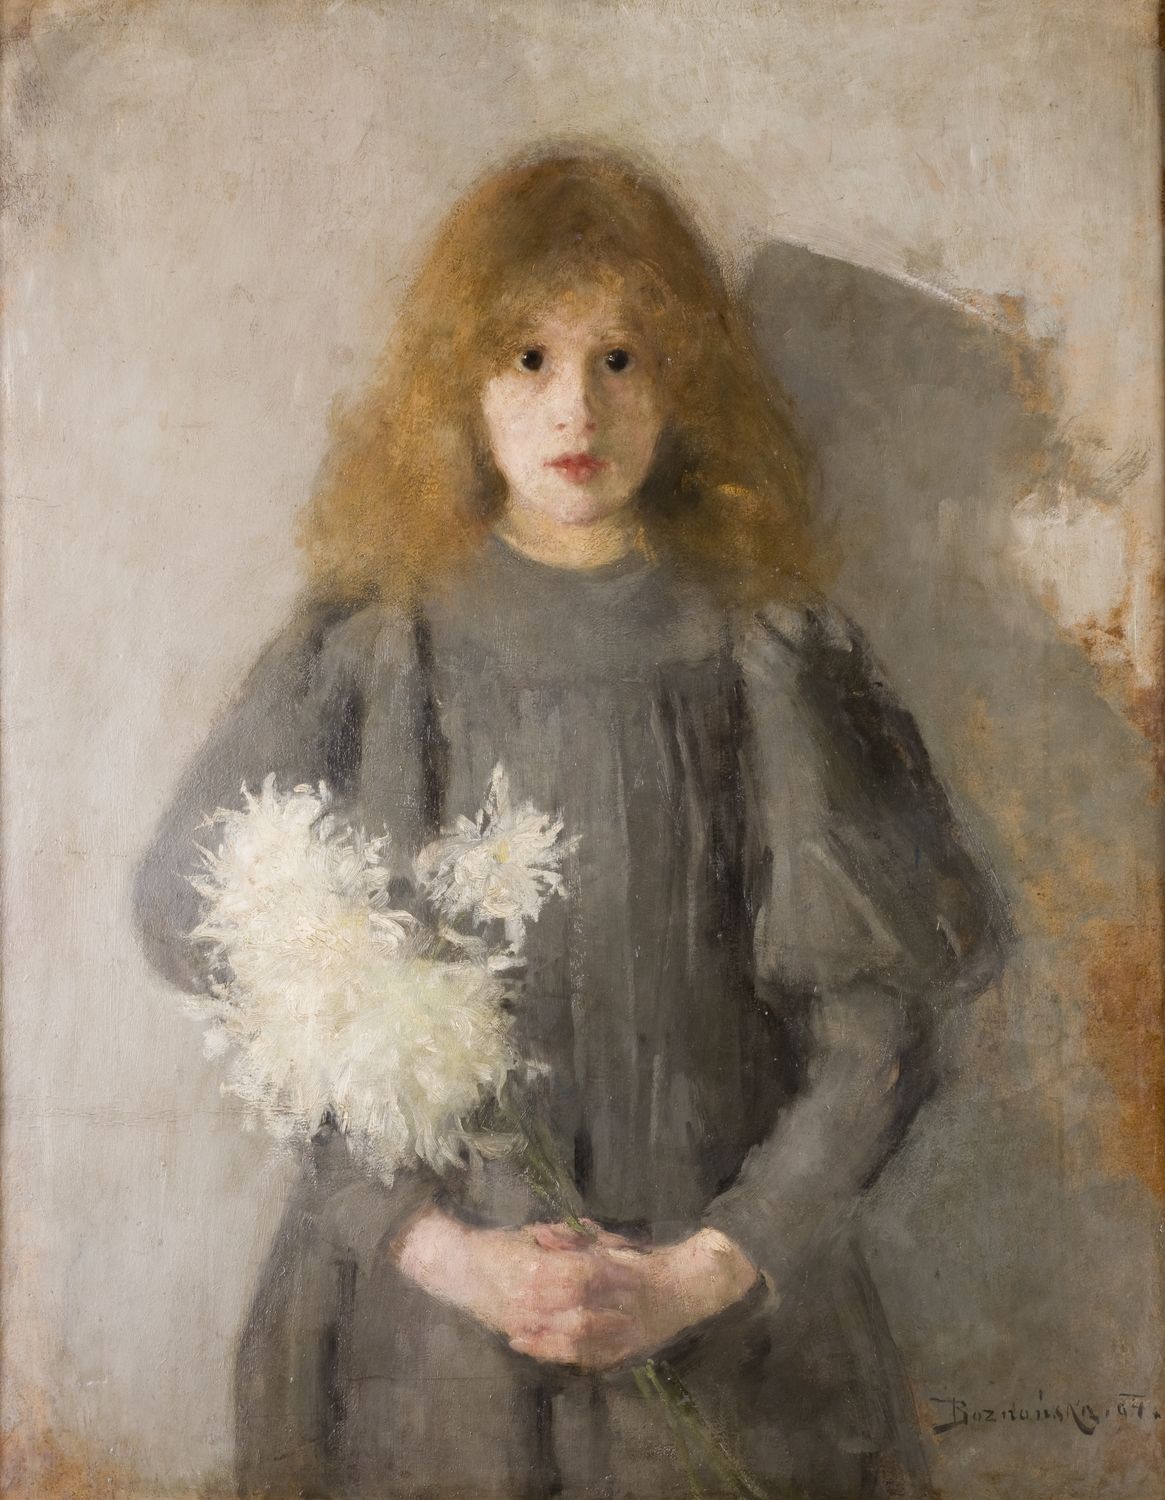 Fată cu crizanteme by Olga Boznańska - 1894 - 88,5 × 69 cm 